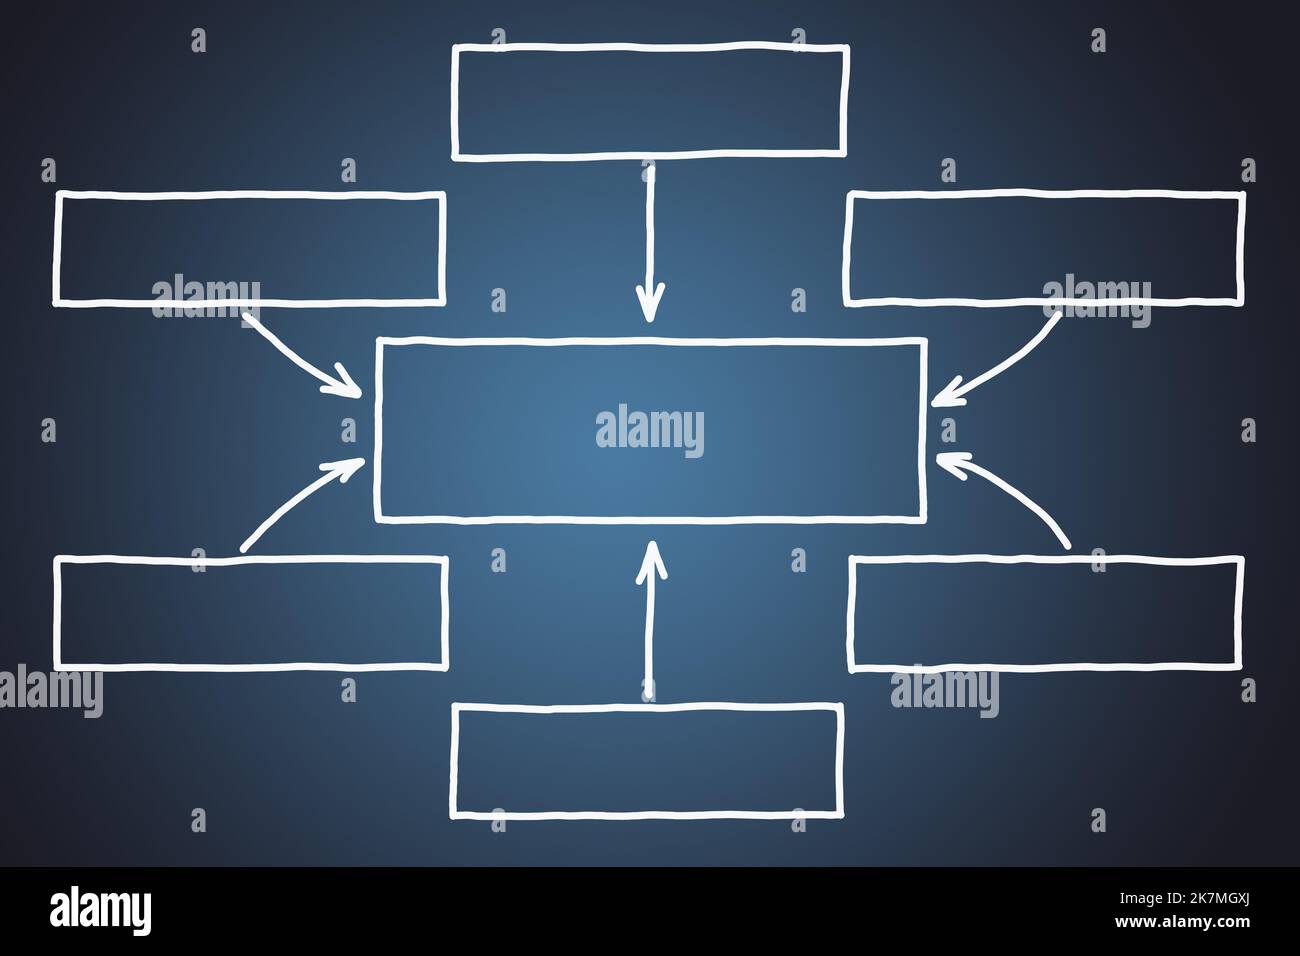 Diagrama de flujo en blanco dibujado a mano con flechas y espacio de copia con marcador sobre fondo azul oscuro. Foto de stock